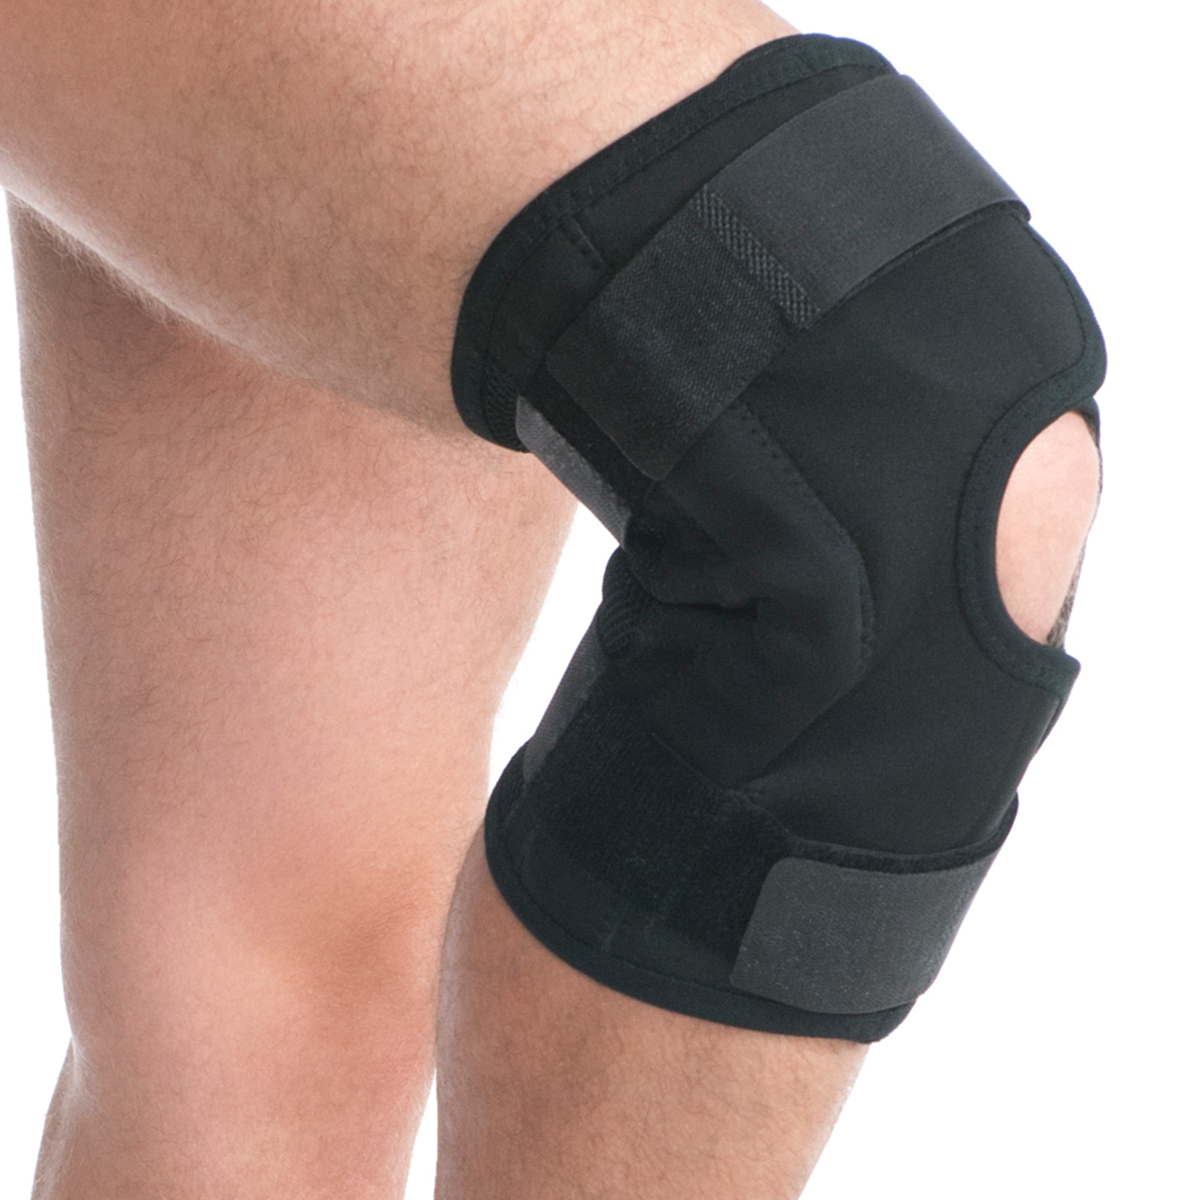 Pooperační ortéza kolenního kloubu černá, Medtextile, 6303 vel. L/XL